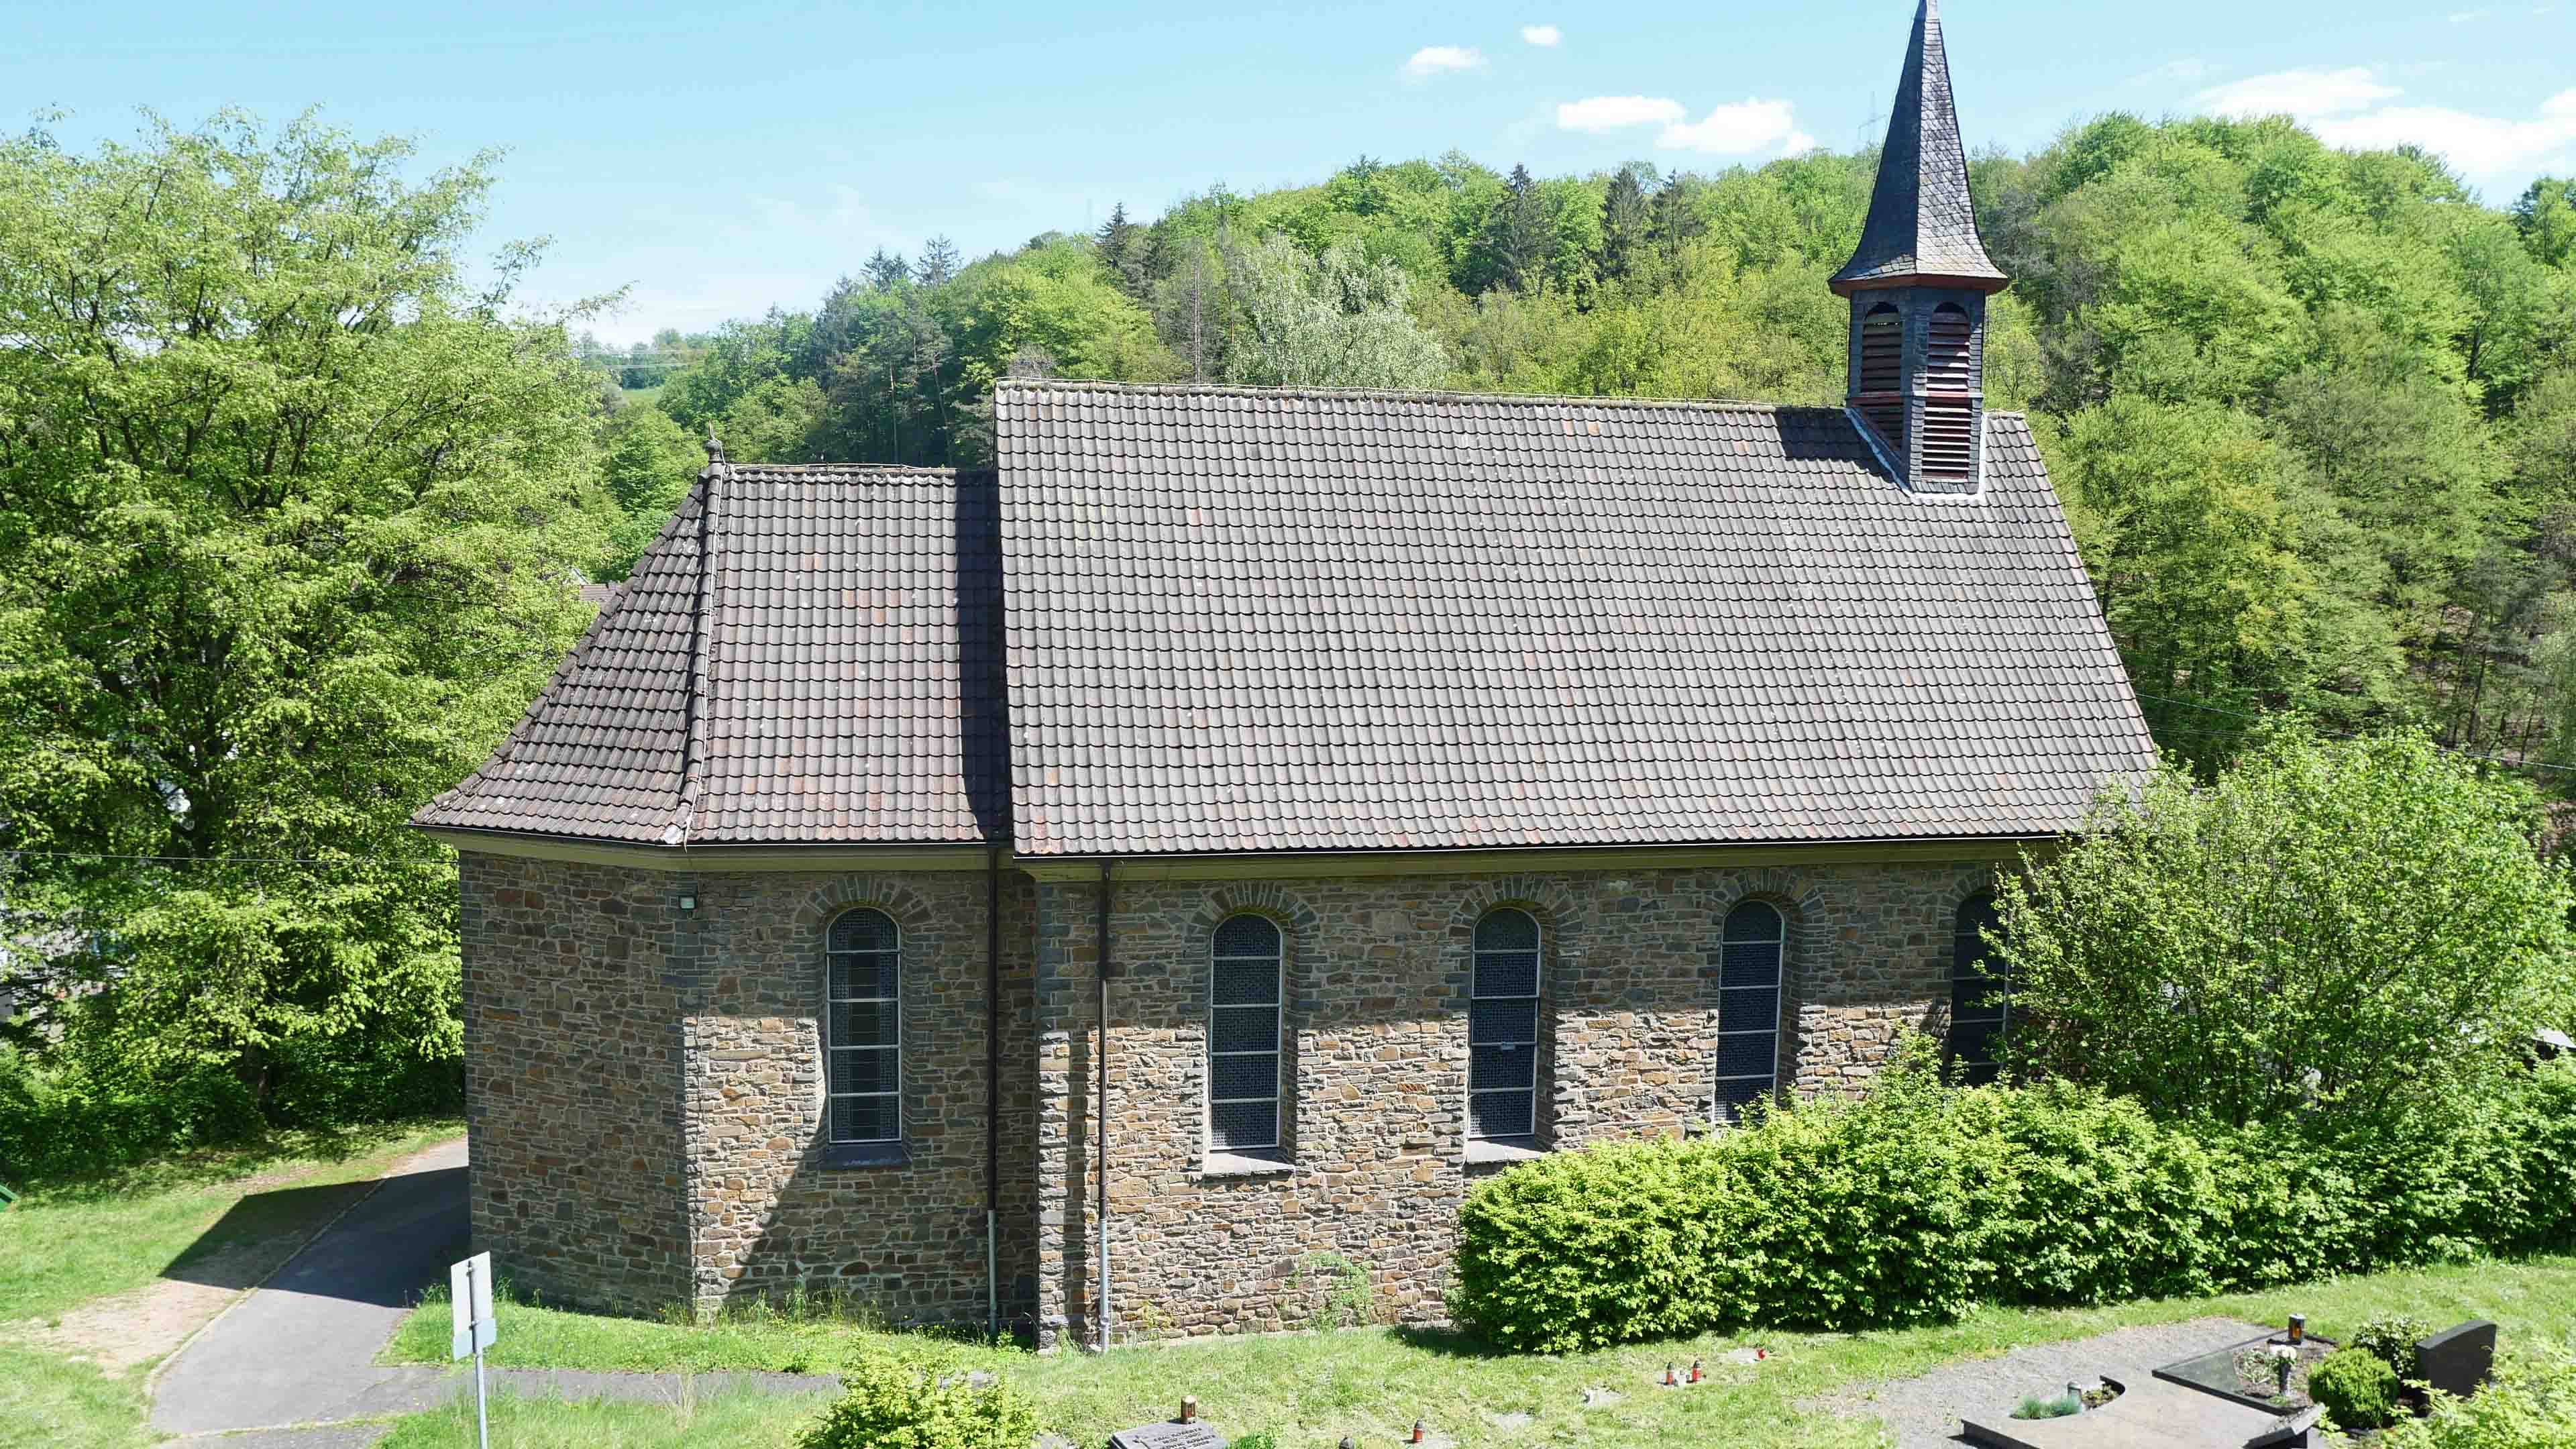 Morsbach-Ellingen: Stilvolle, kleine Bruchsteinkirche, auf einem Hügel und im Grünen eingebettet